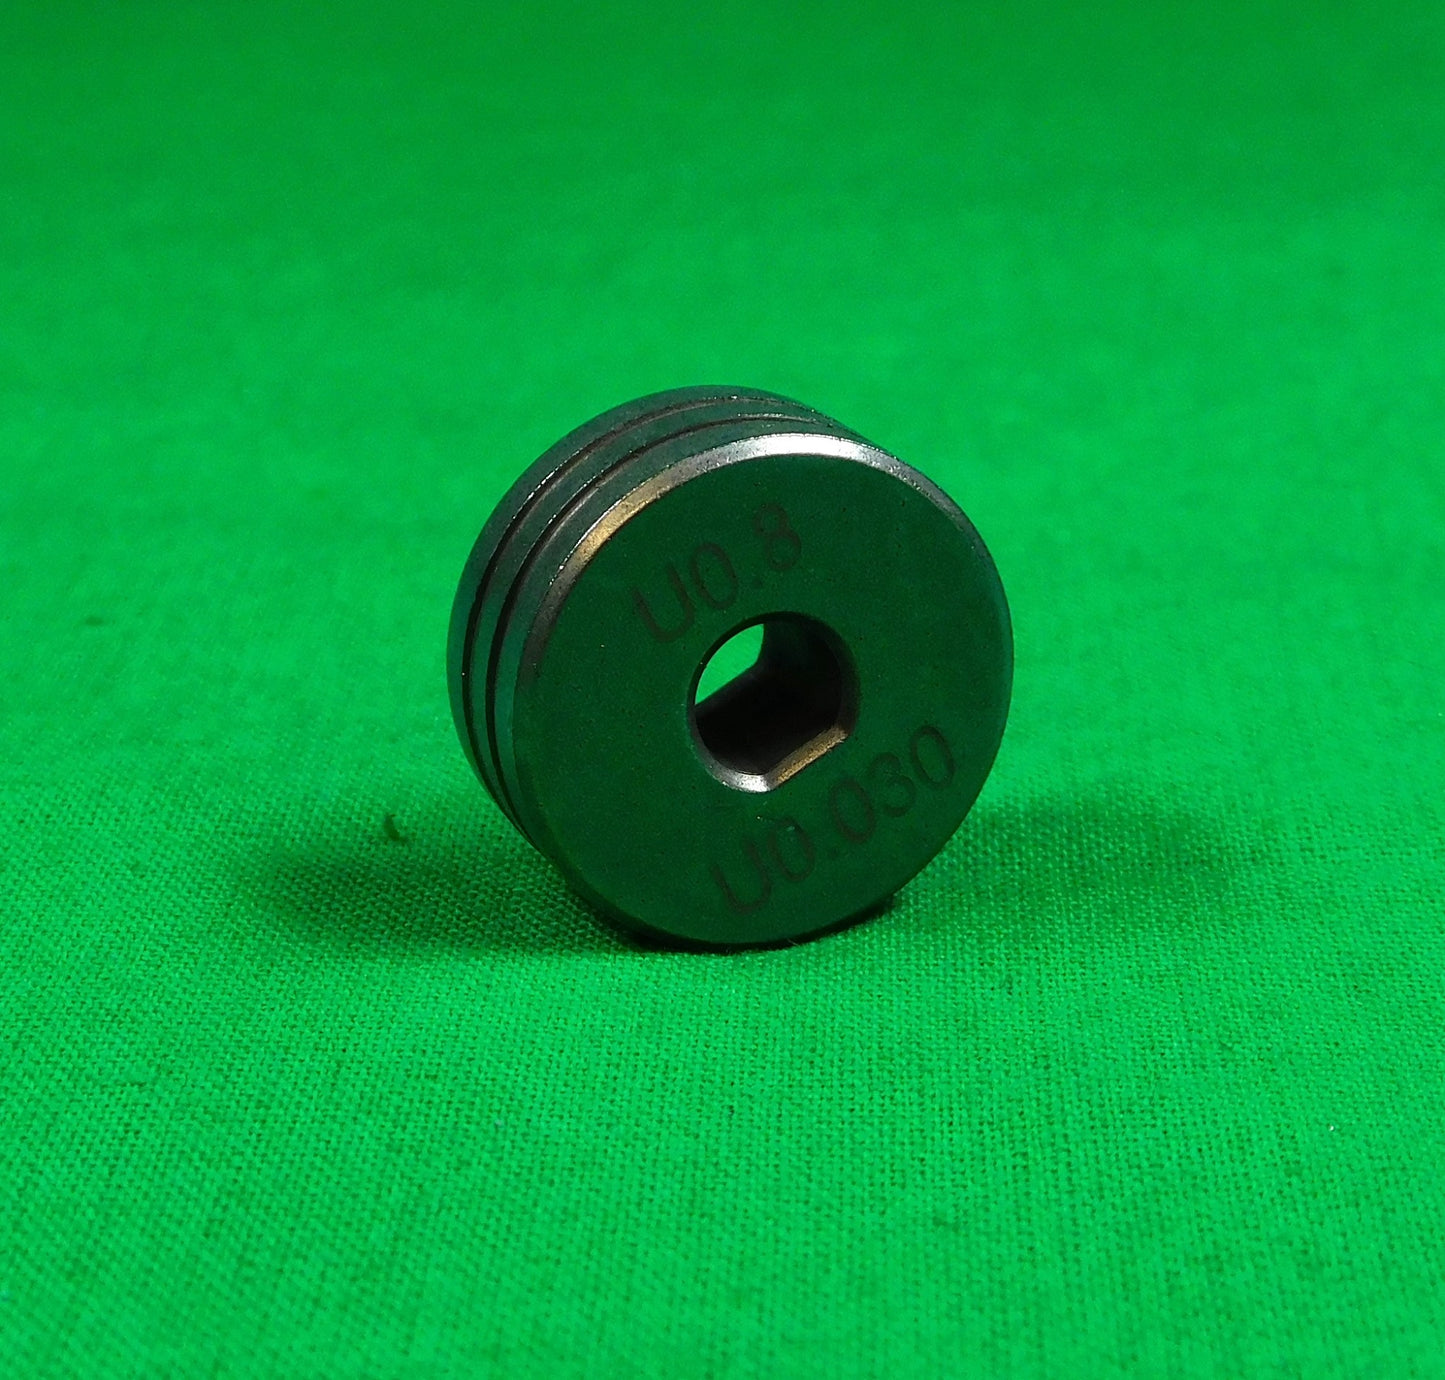 MIG Spoolgun Drive Rollers SPX 0.8/1.0mm U Groove RU300806.0.8-1.0U